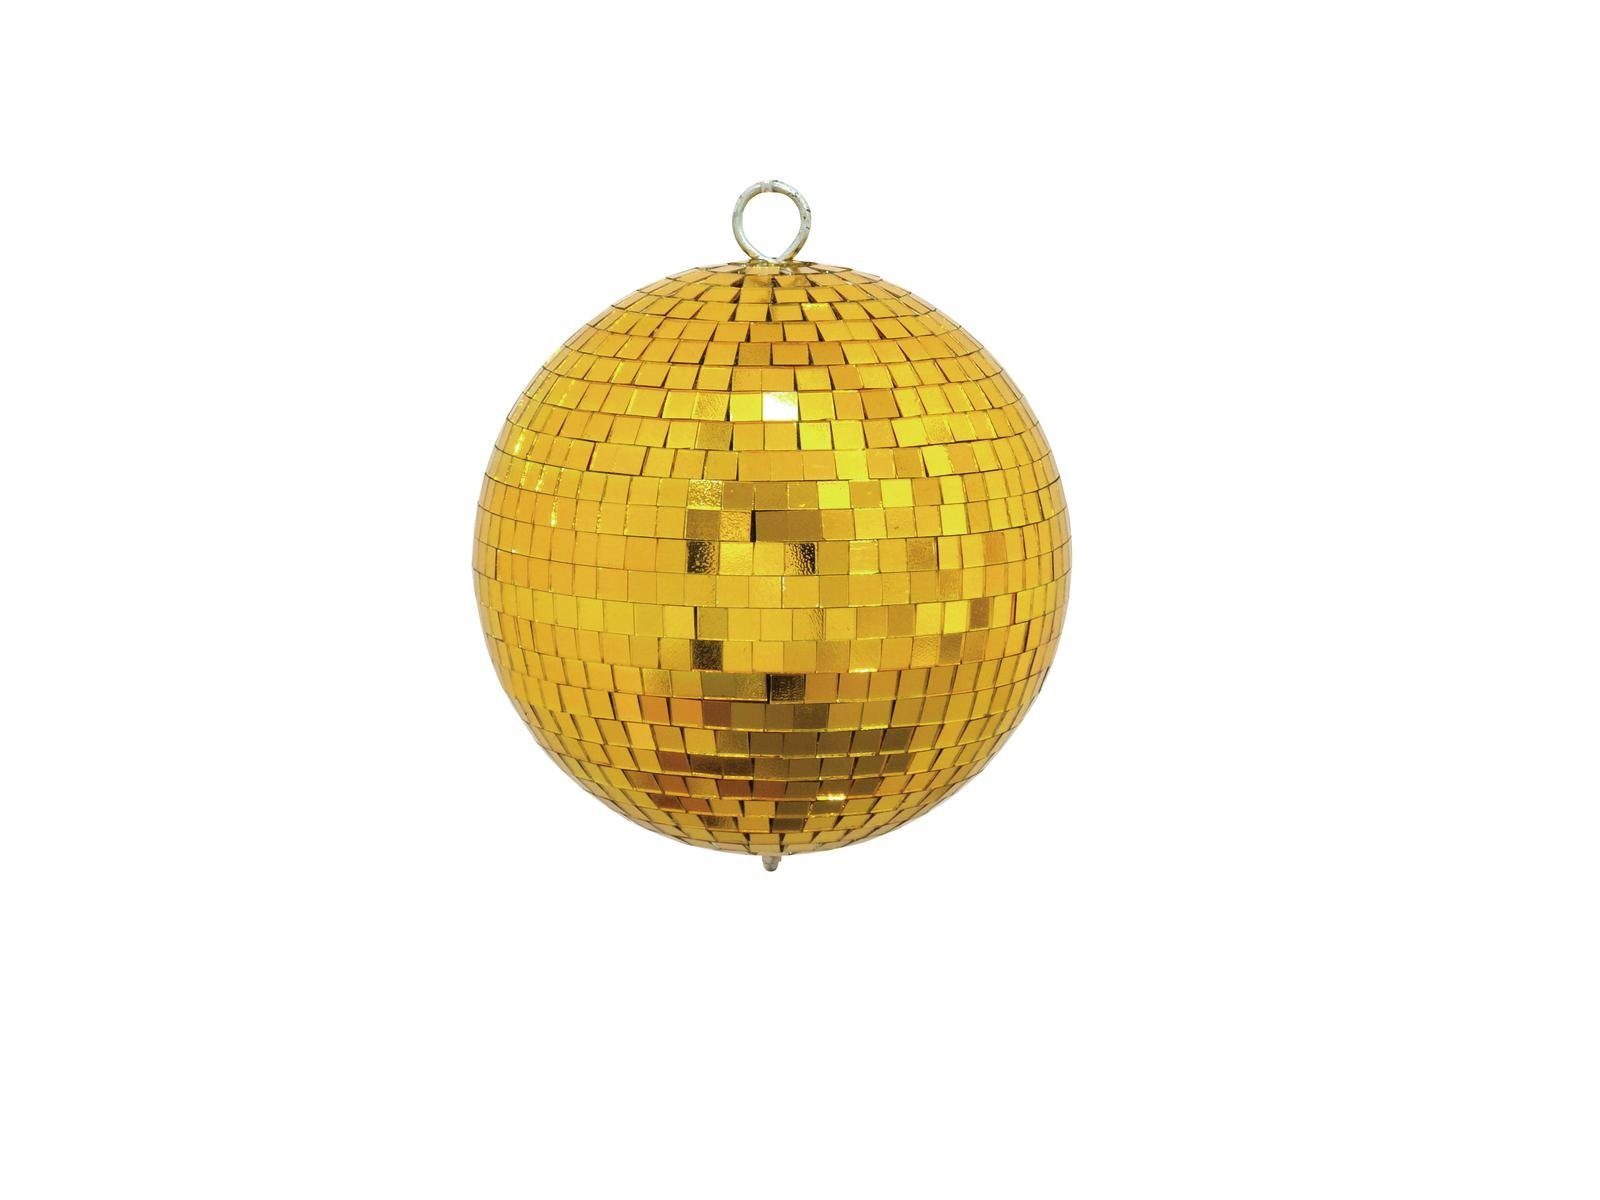 SATISFIRE Discolicht Spiegelkugel 15cm gold Discokugel Mirrorball Party Disko Deko